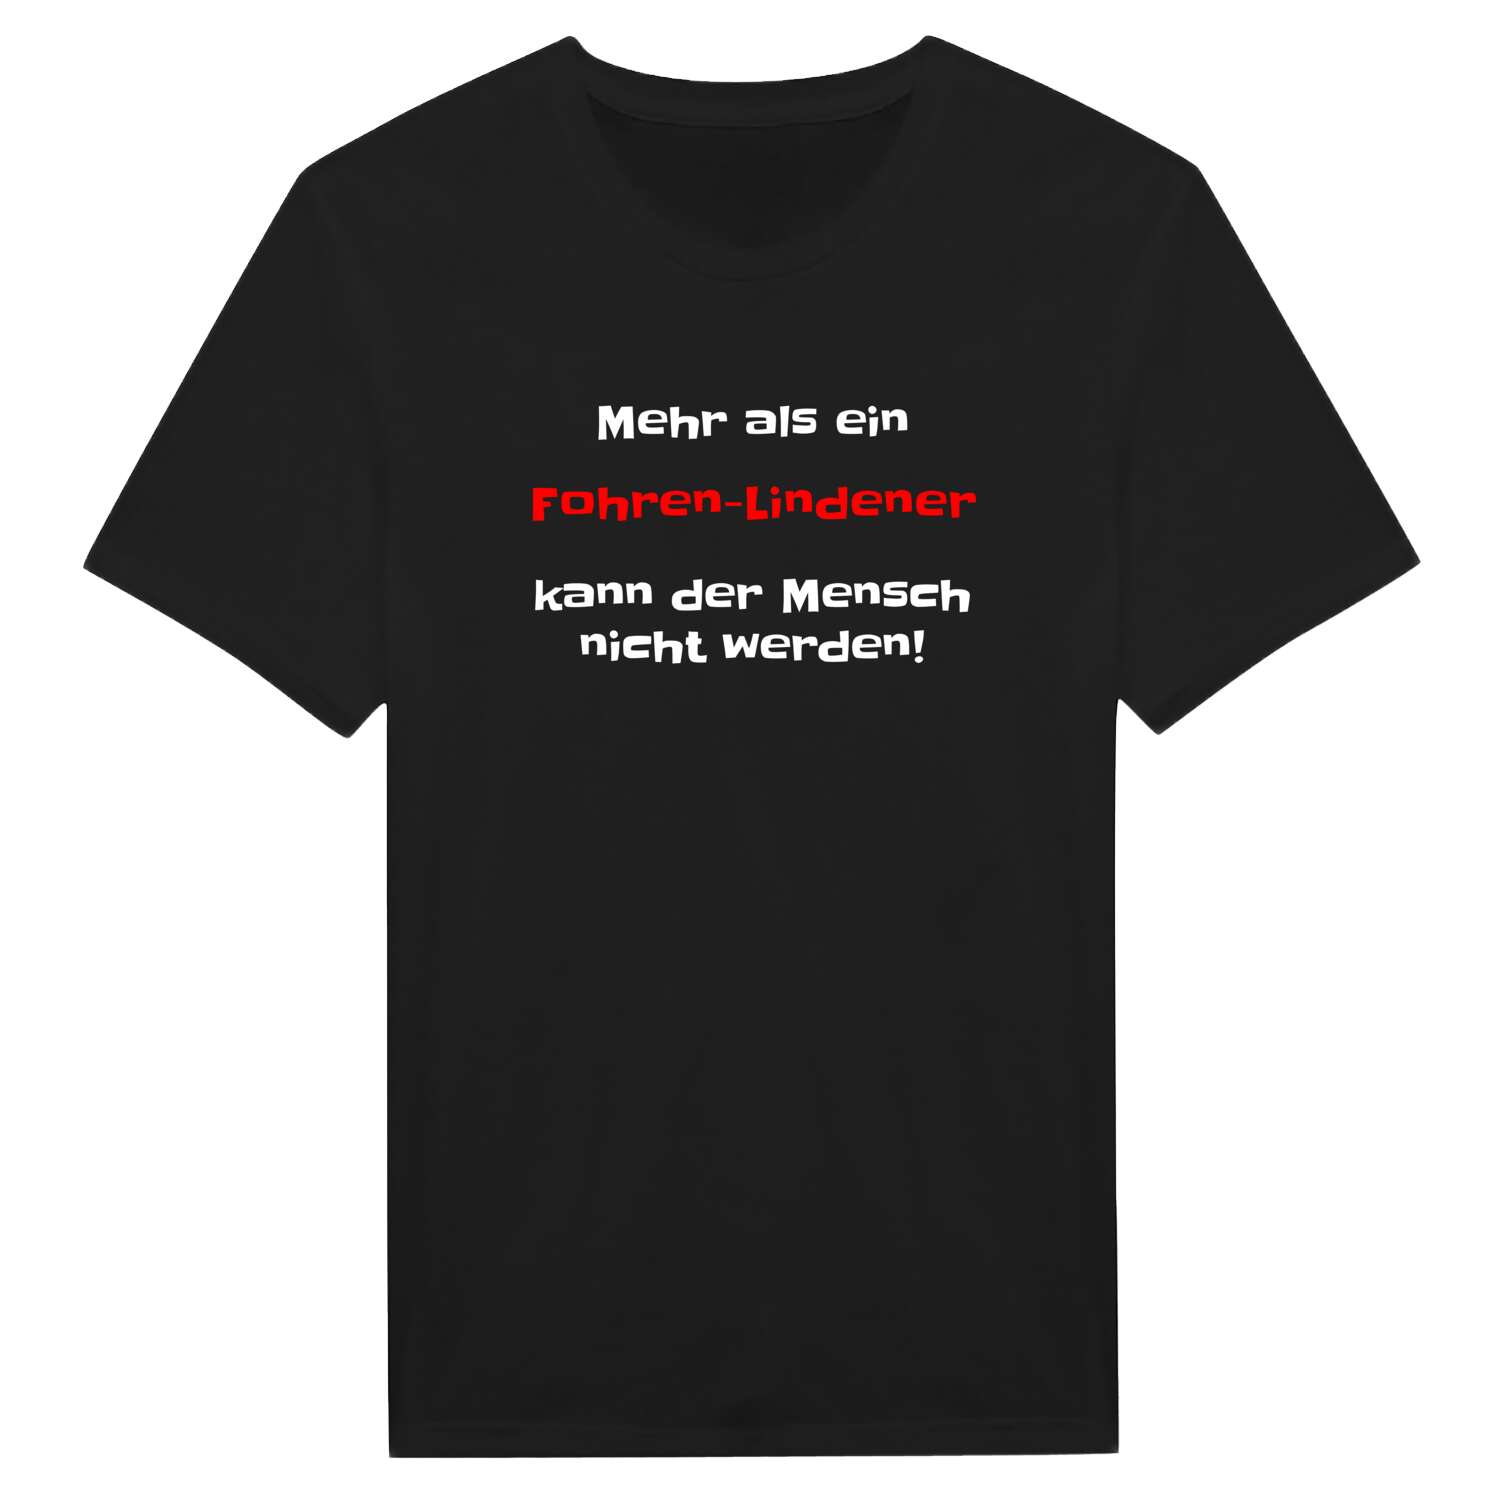 Fohren-Linden T-Shirt »Mehr als ein«